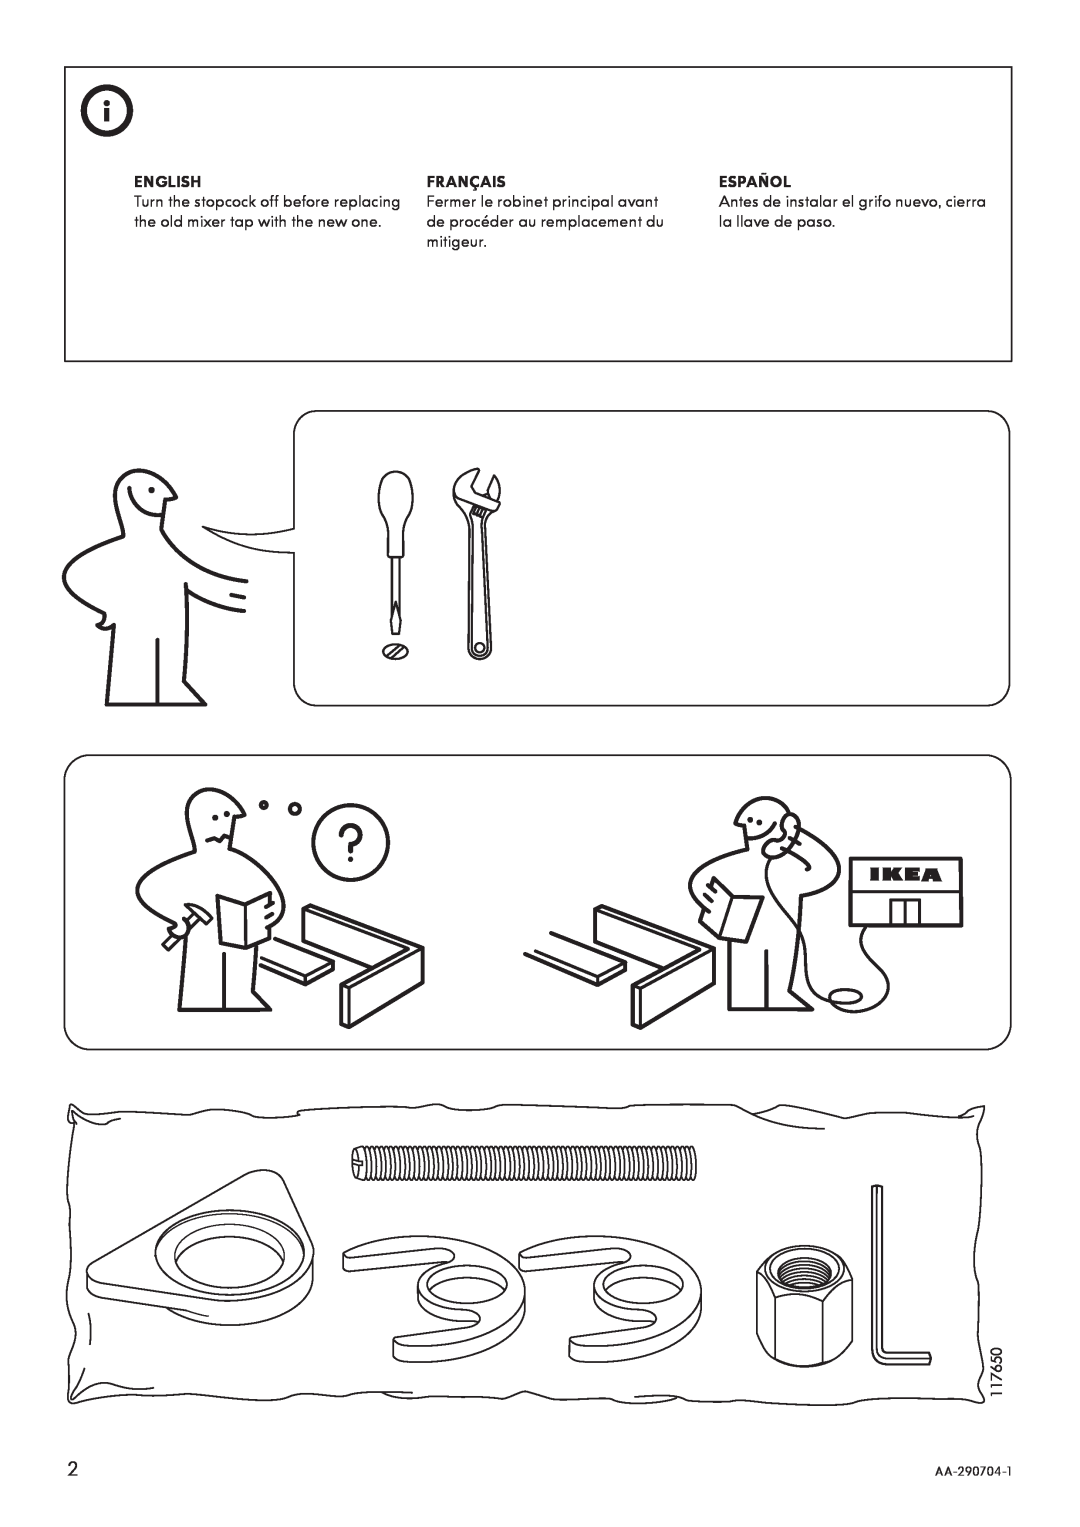 IKEA AA-290704-1 manual English, Français, Español 